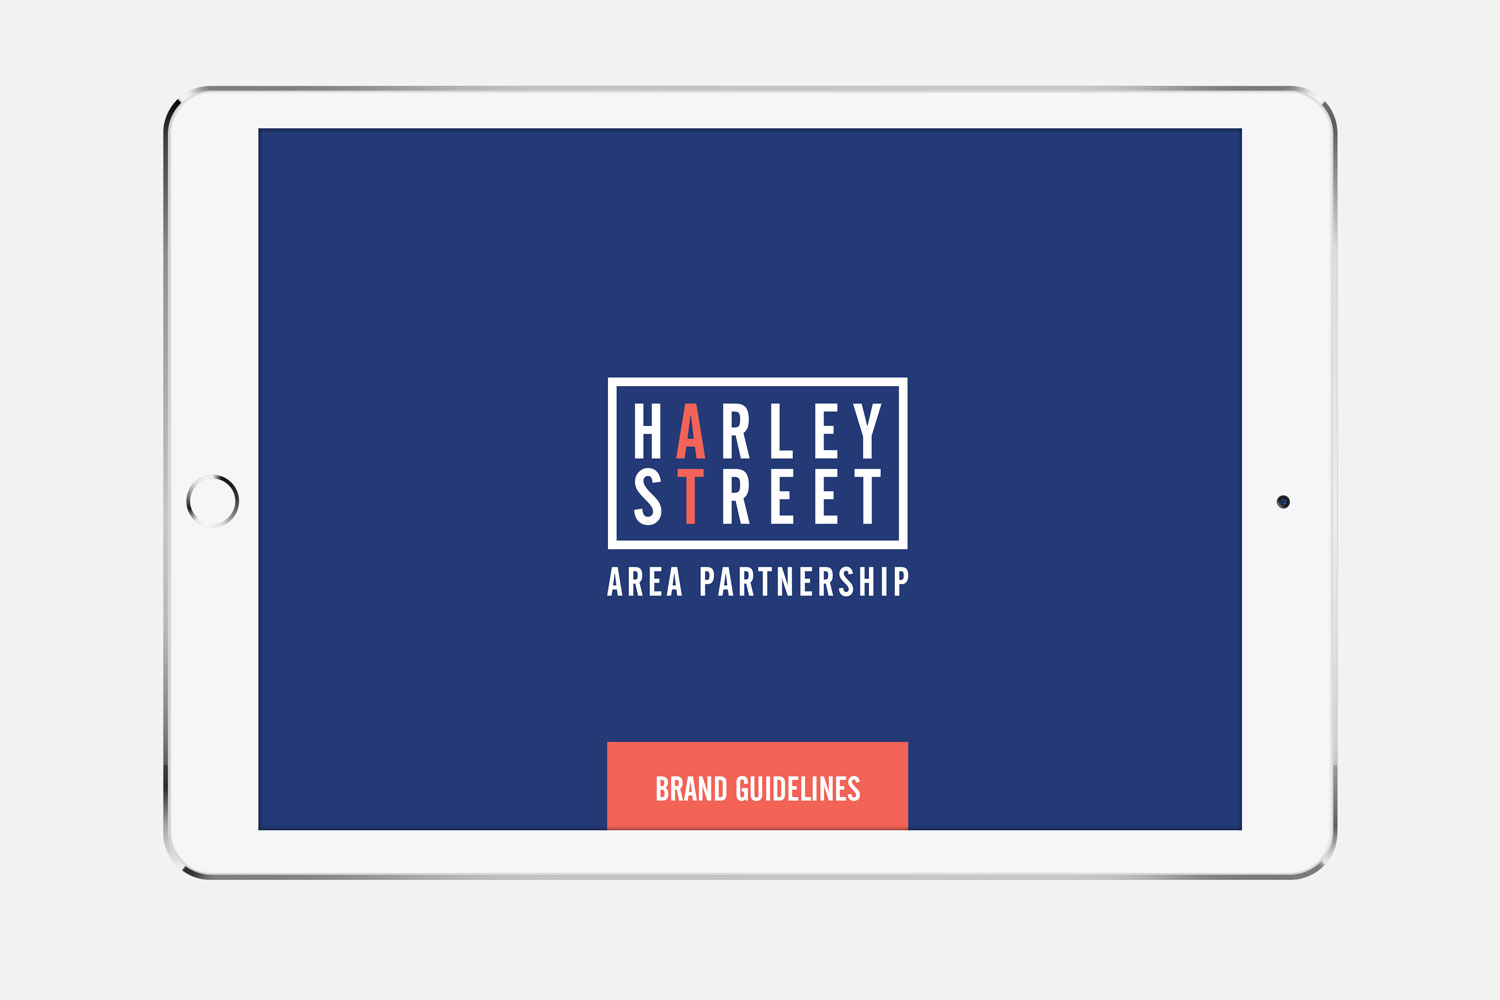 Harley Street guidelines